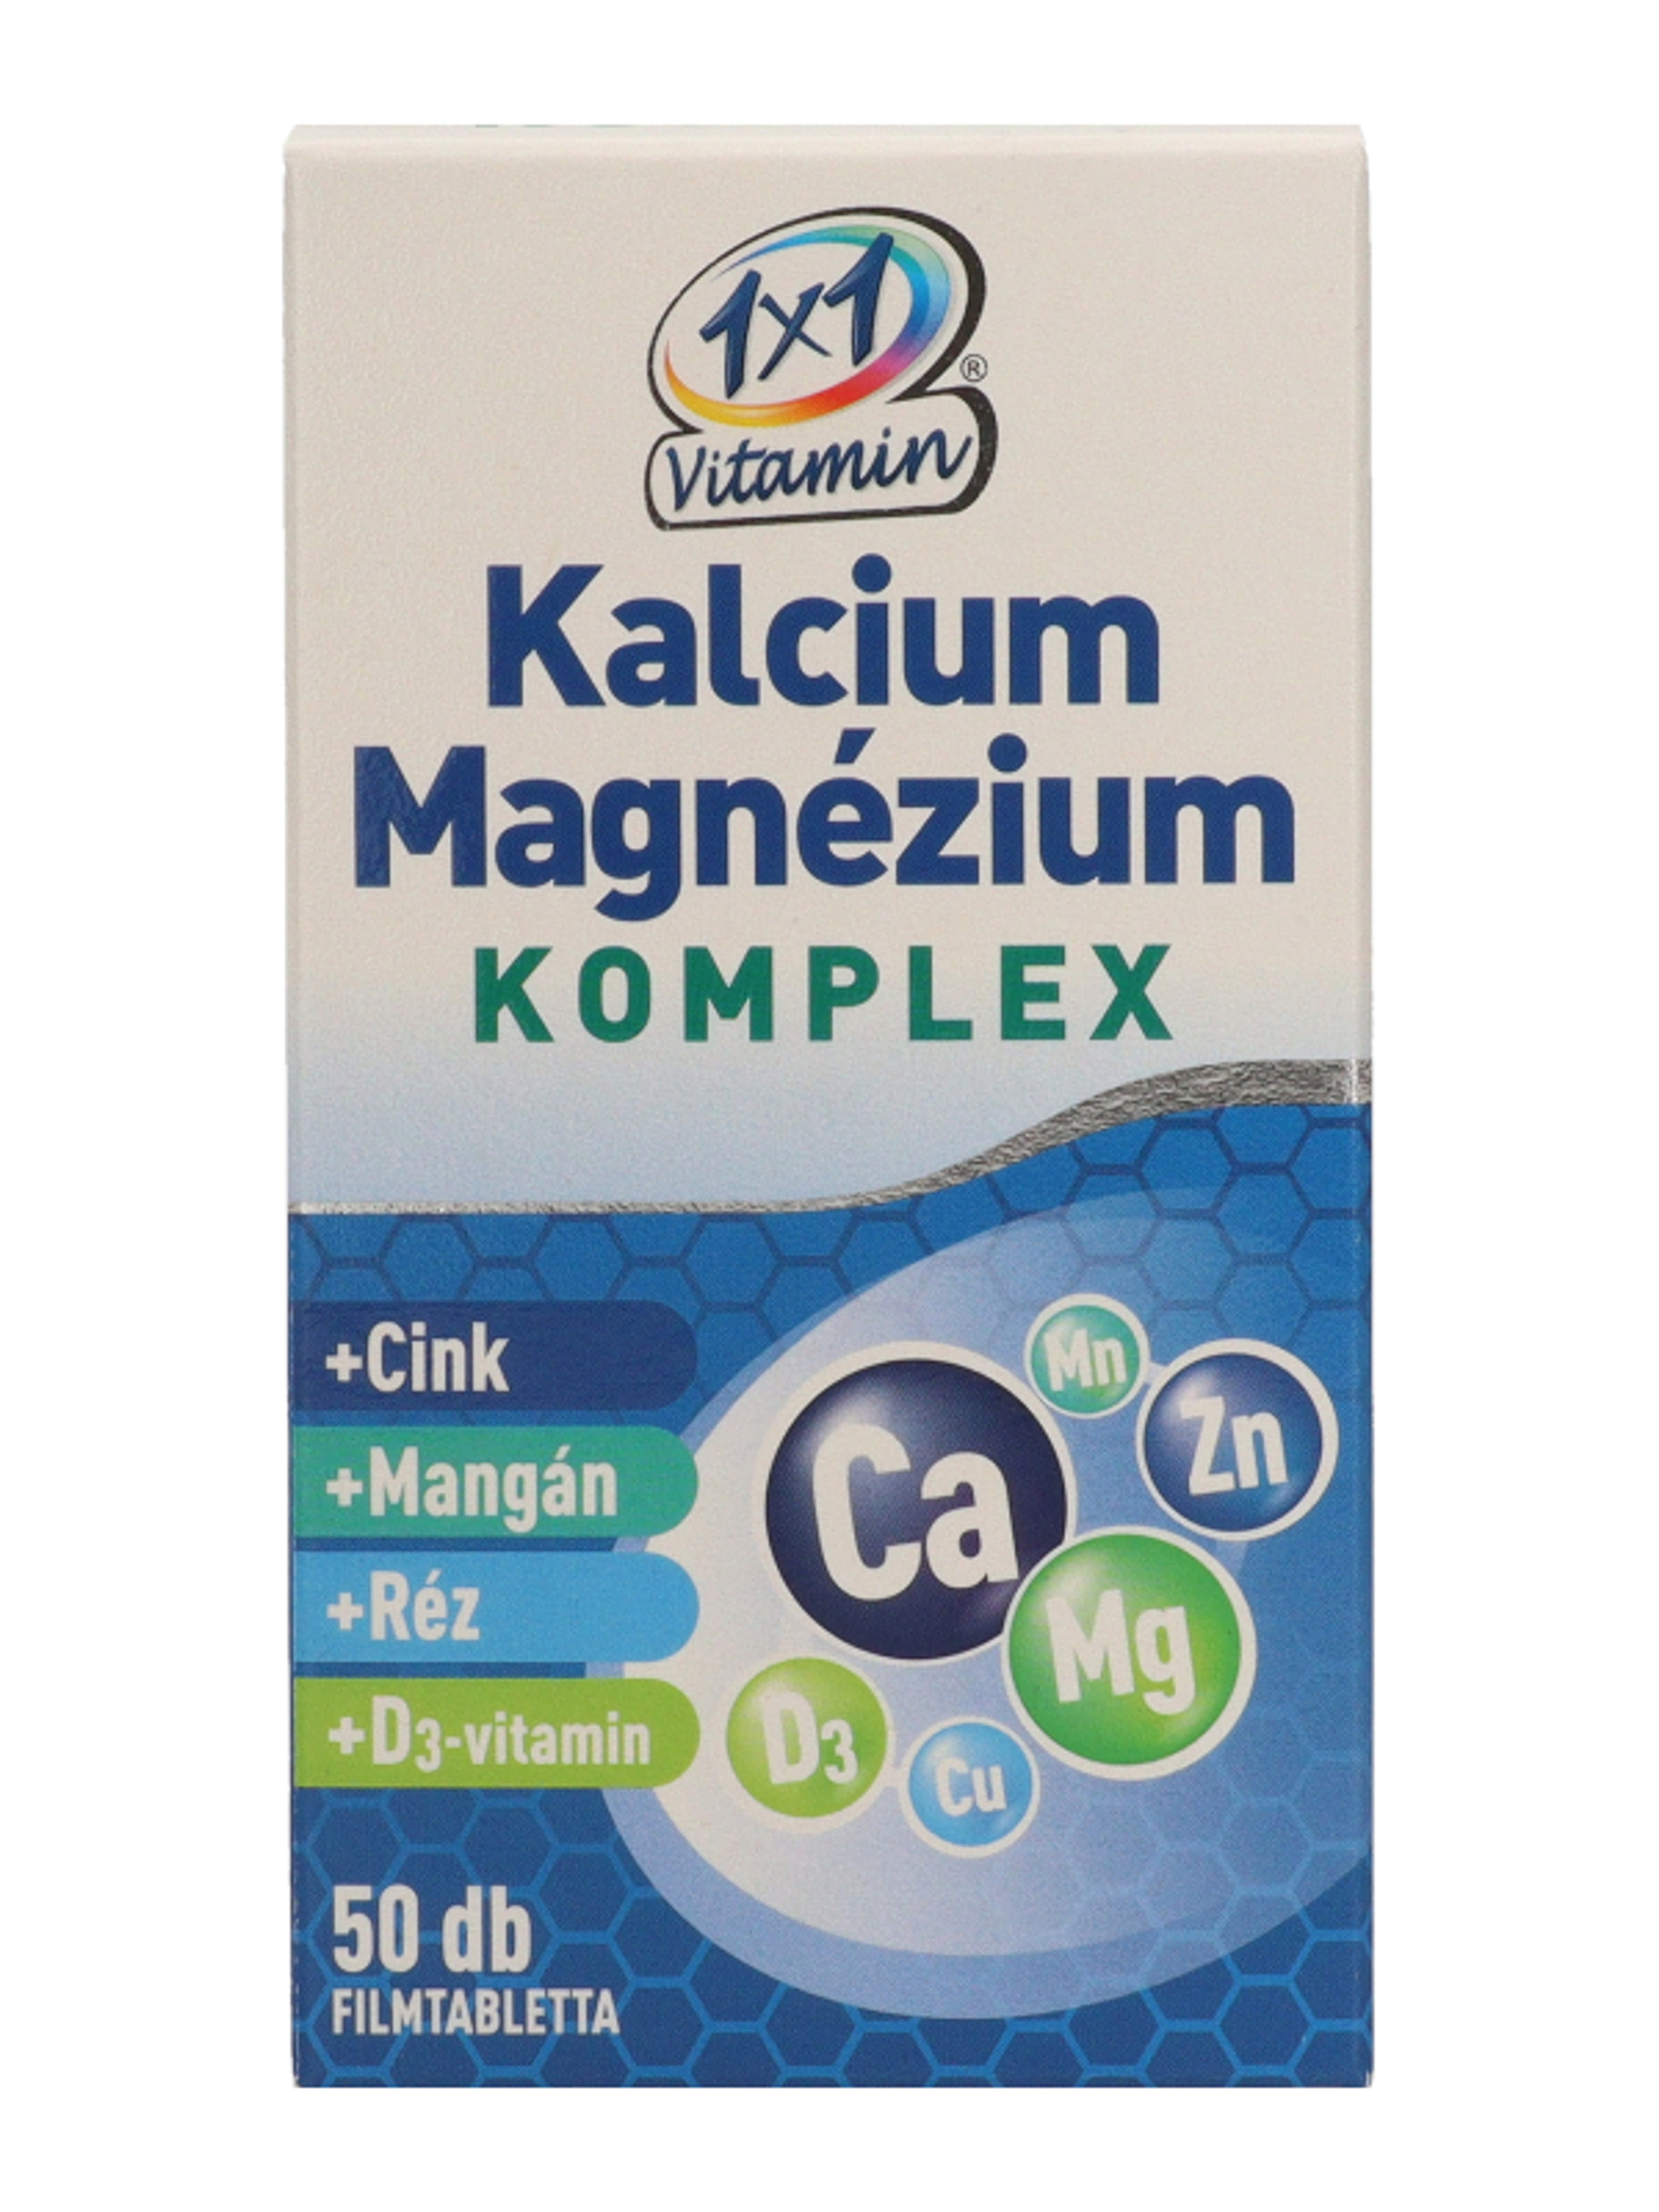 1x1 Vitamin Kalcium + Magnézium Komplex filmtabletta - 50 db-2